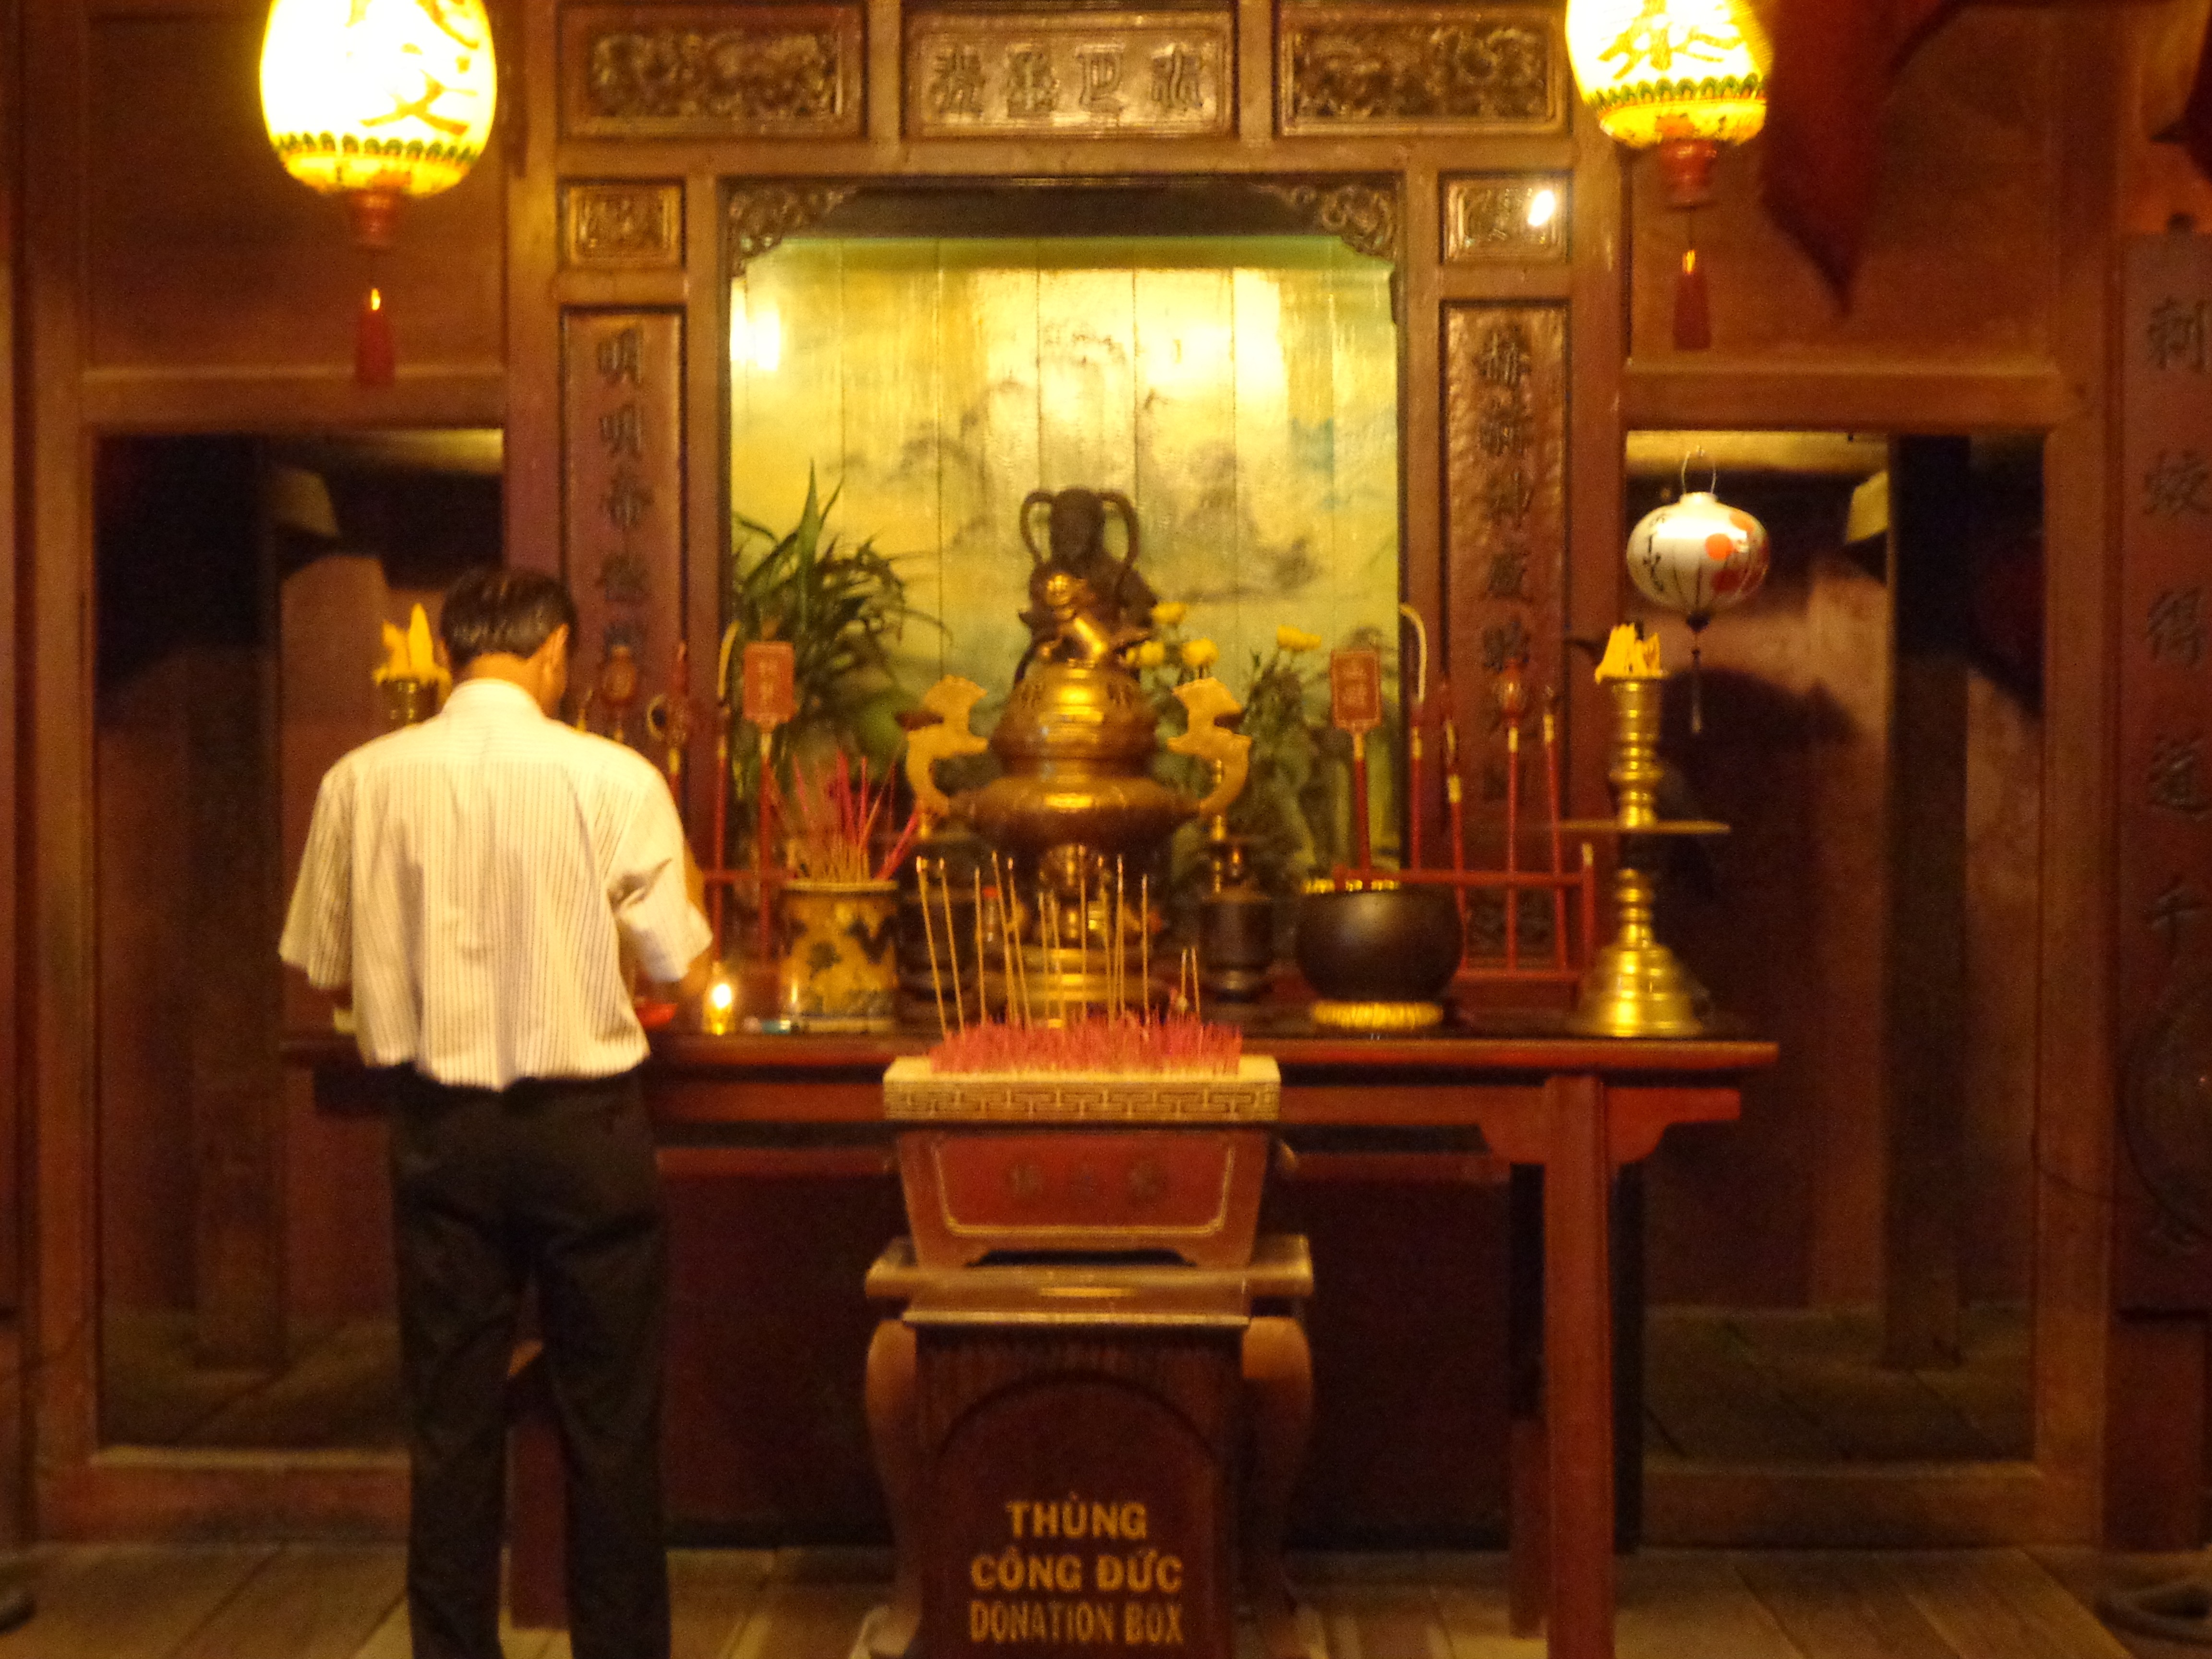 The prayer shrine inside the bridge.